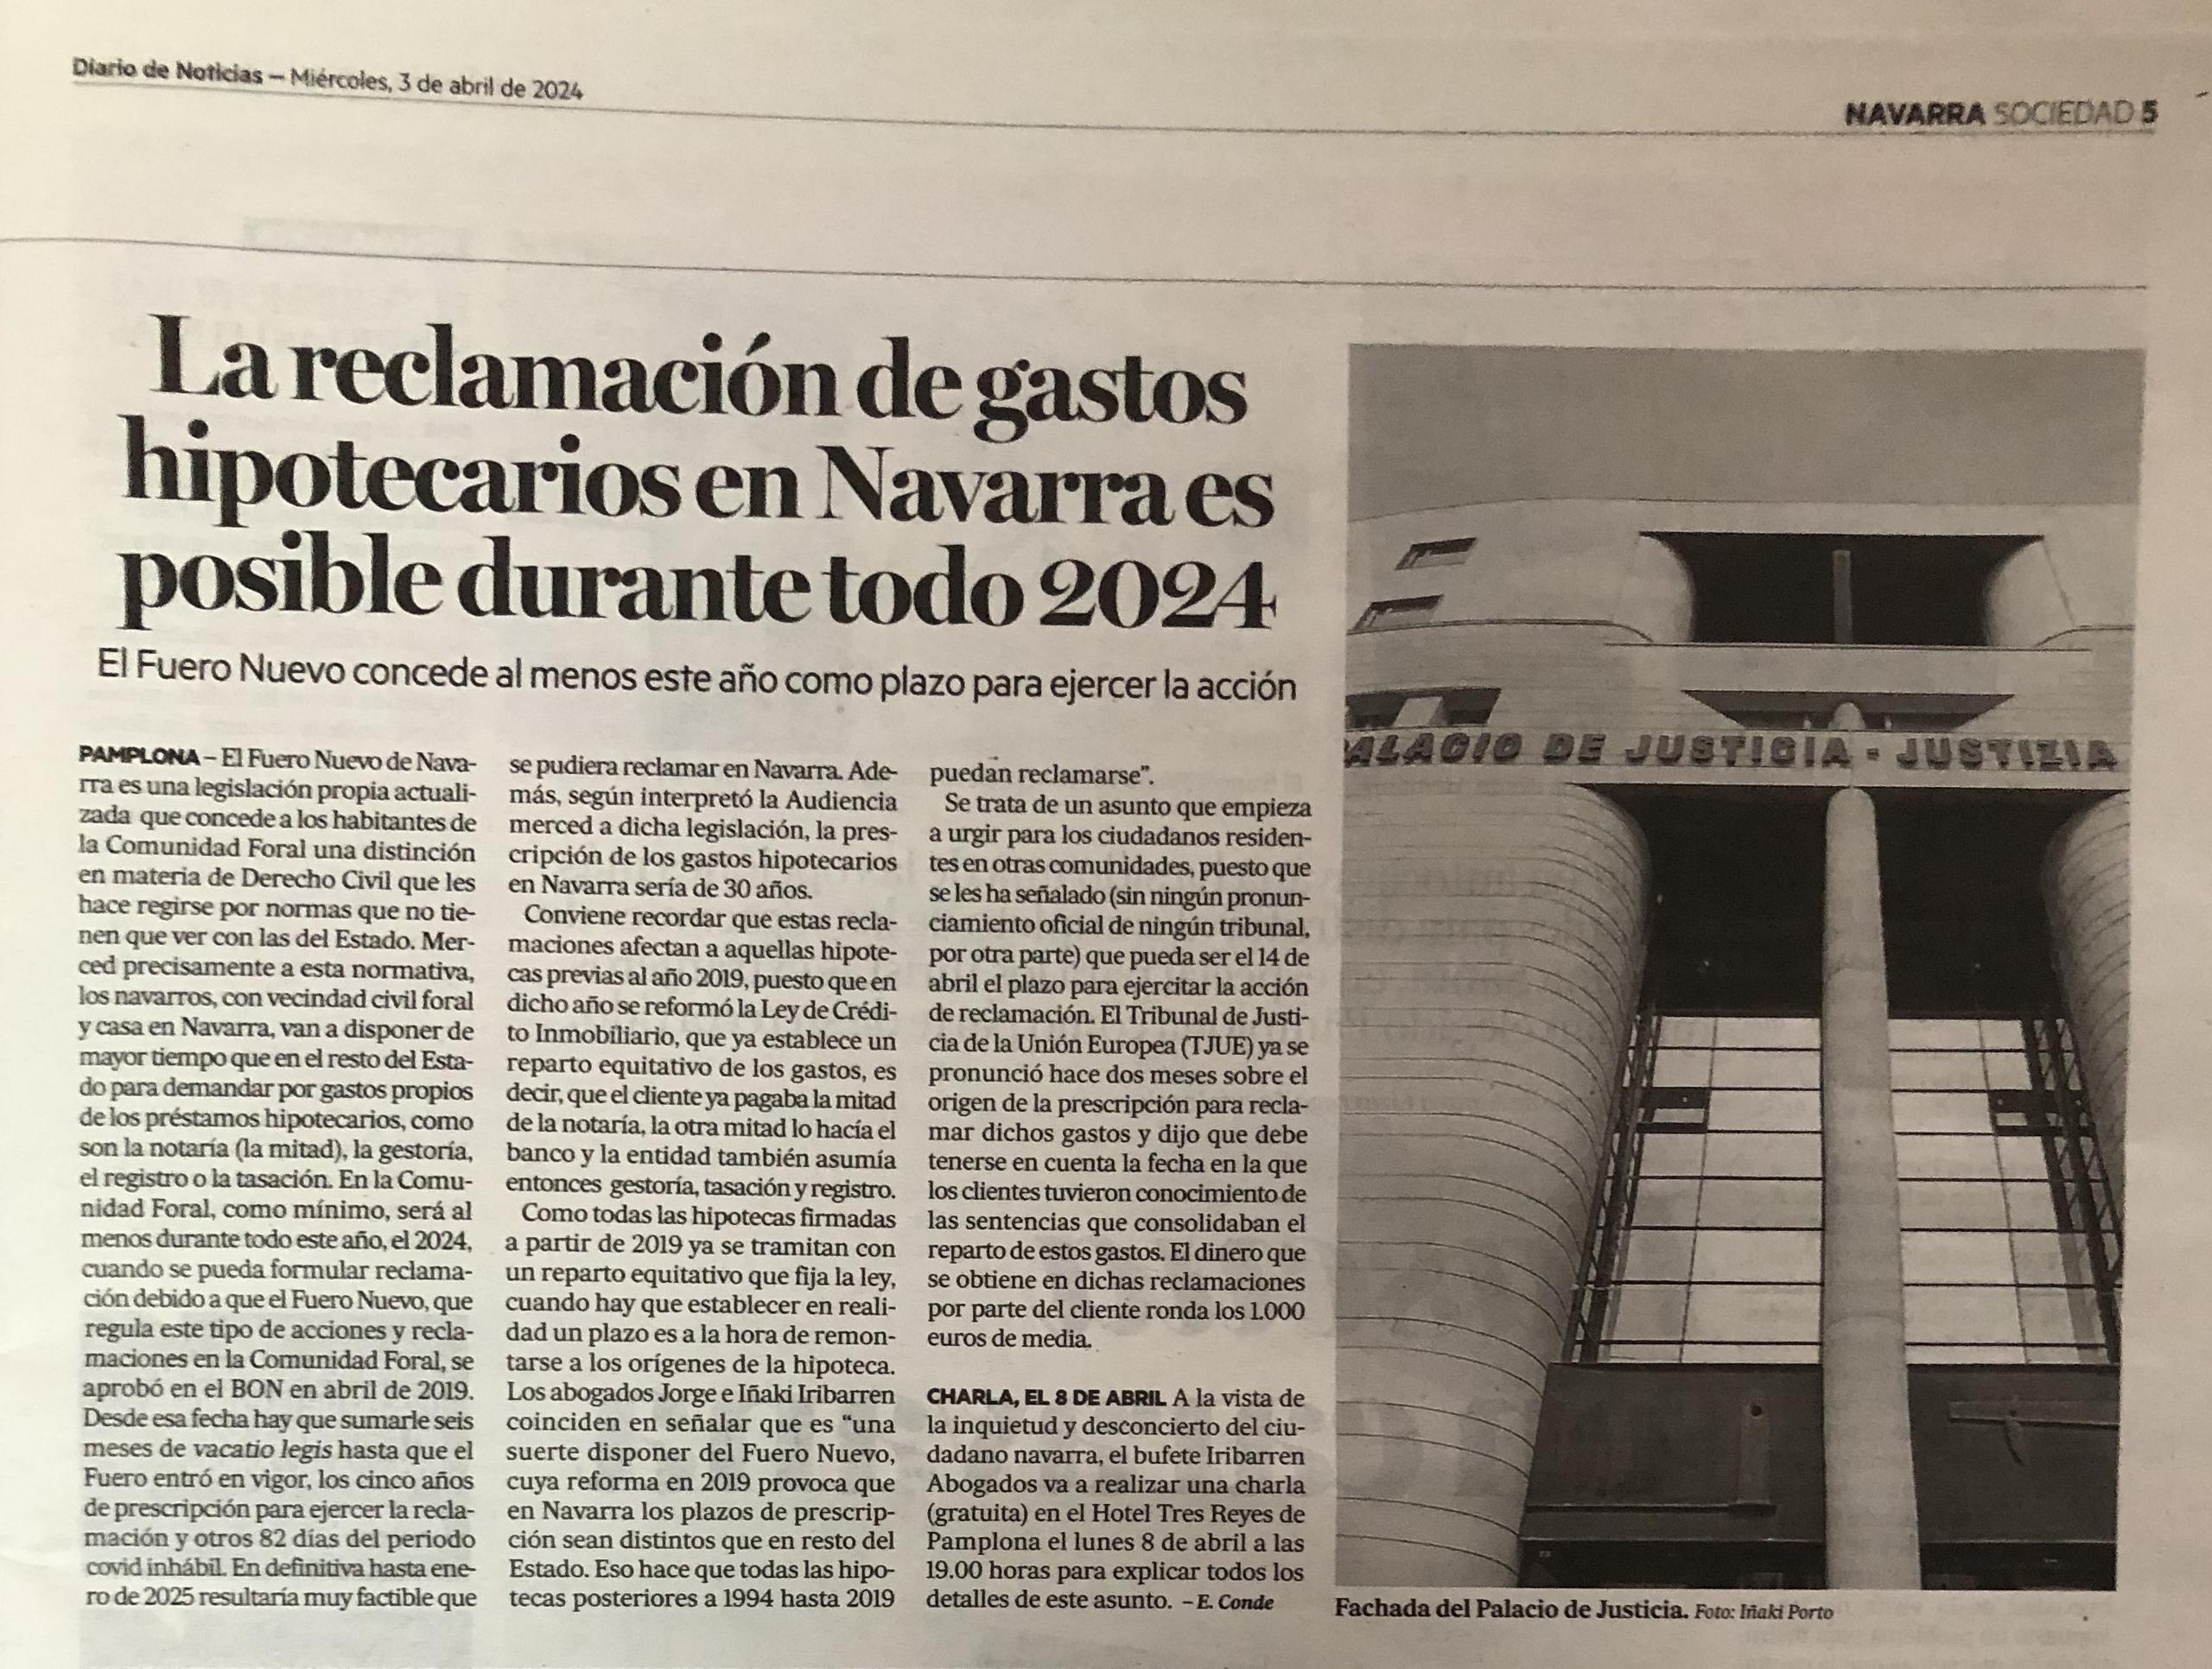 Los gastos hipotecarios en Navarra se pueden reclamar durante todo 2024 gracias al Fuero Nuevo